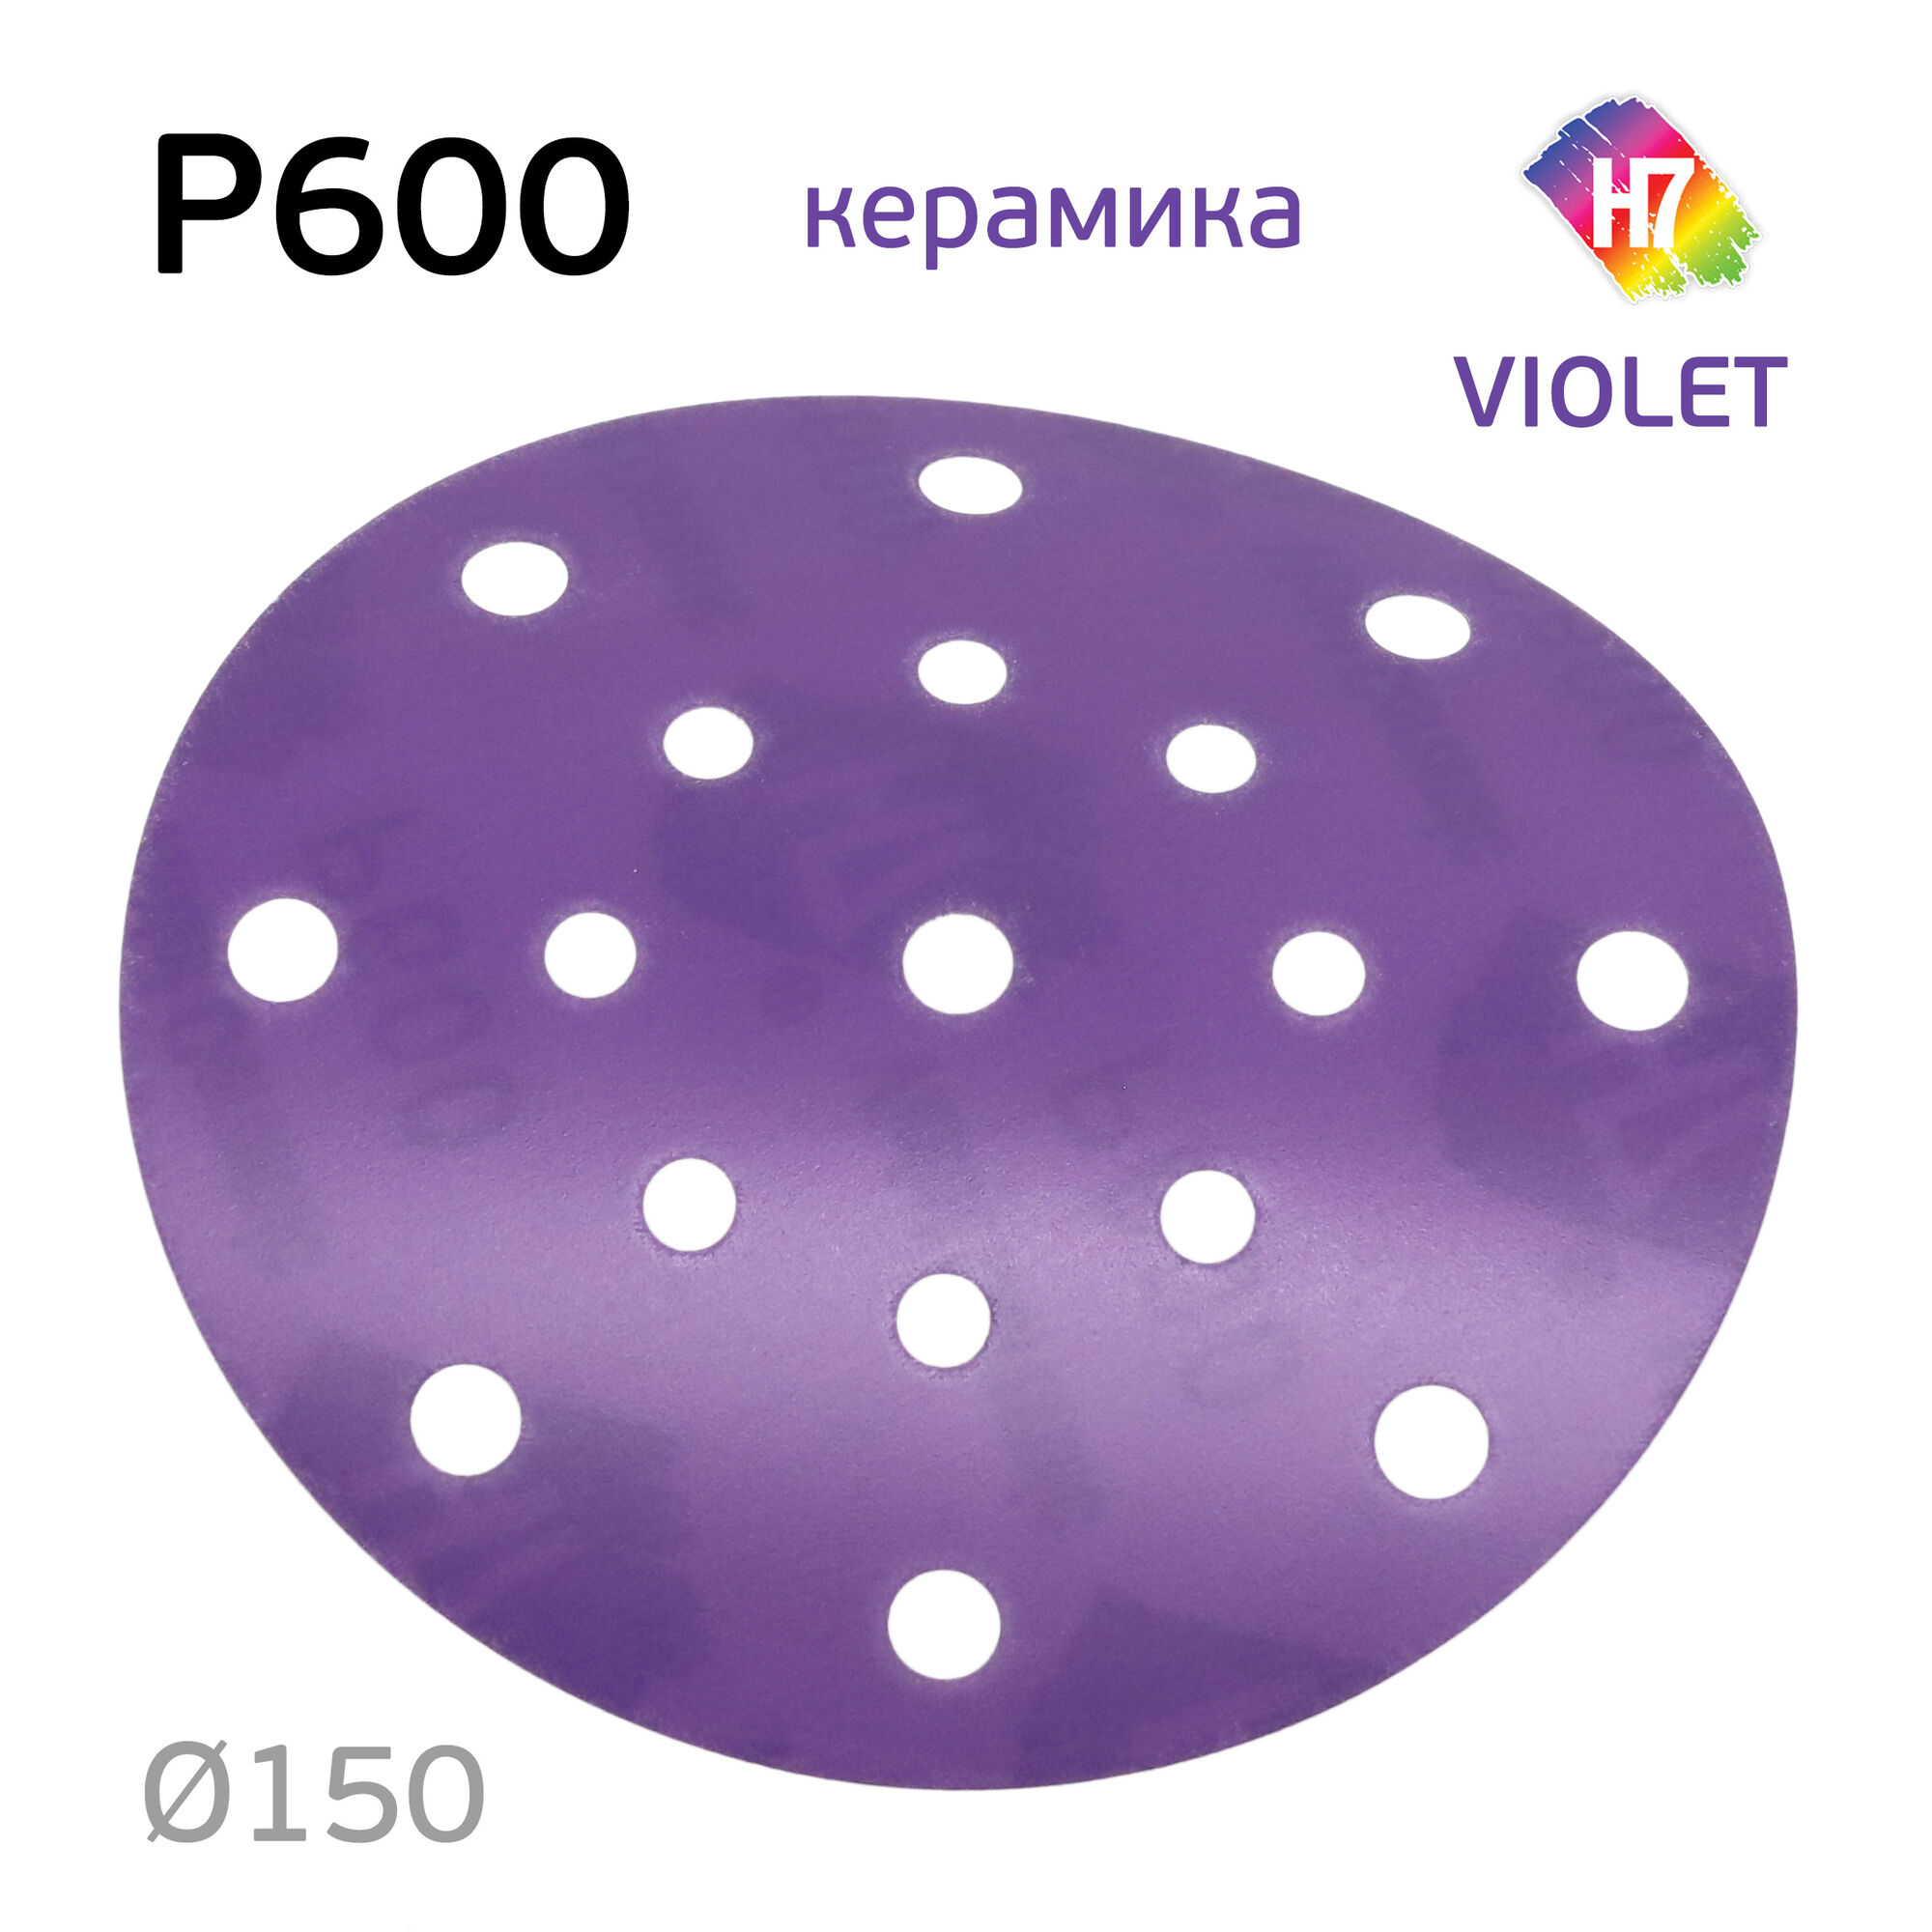 Круг абразивный H7 Violet P600 липучка (17отв.) керамическое зерно